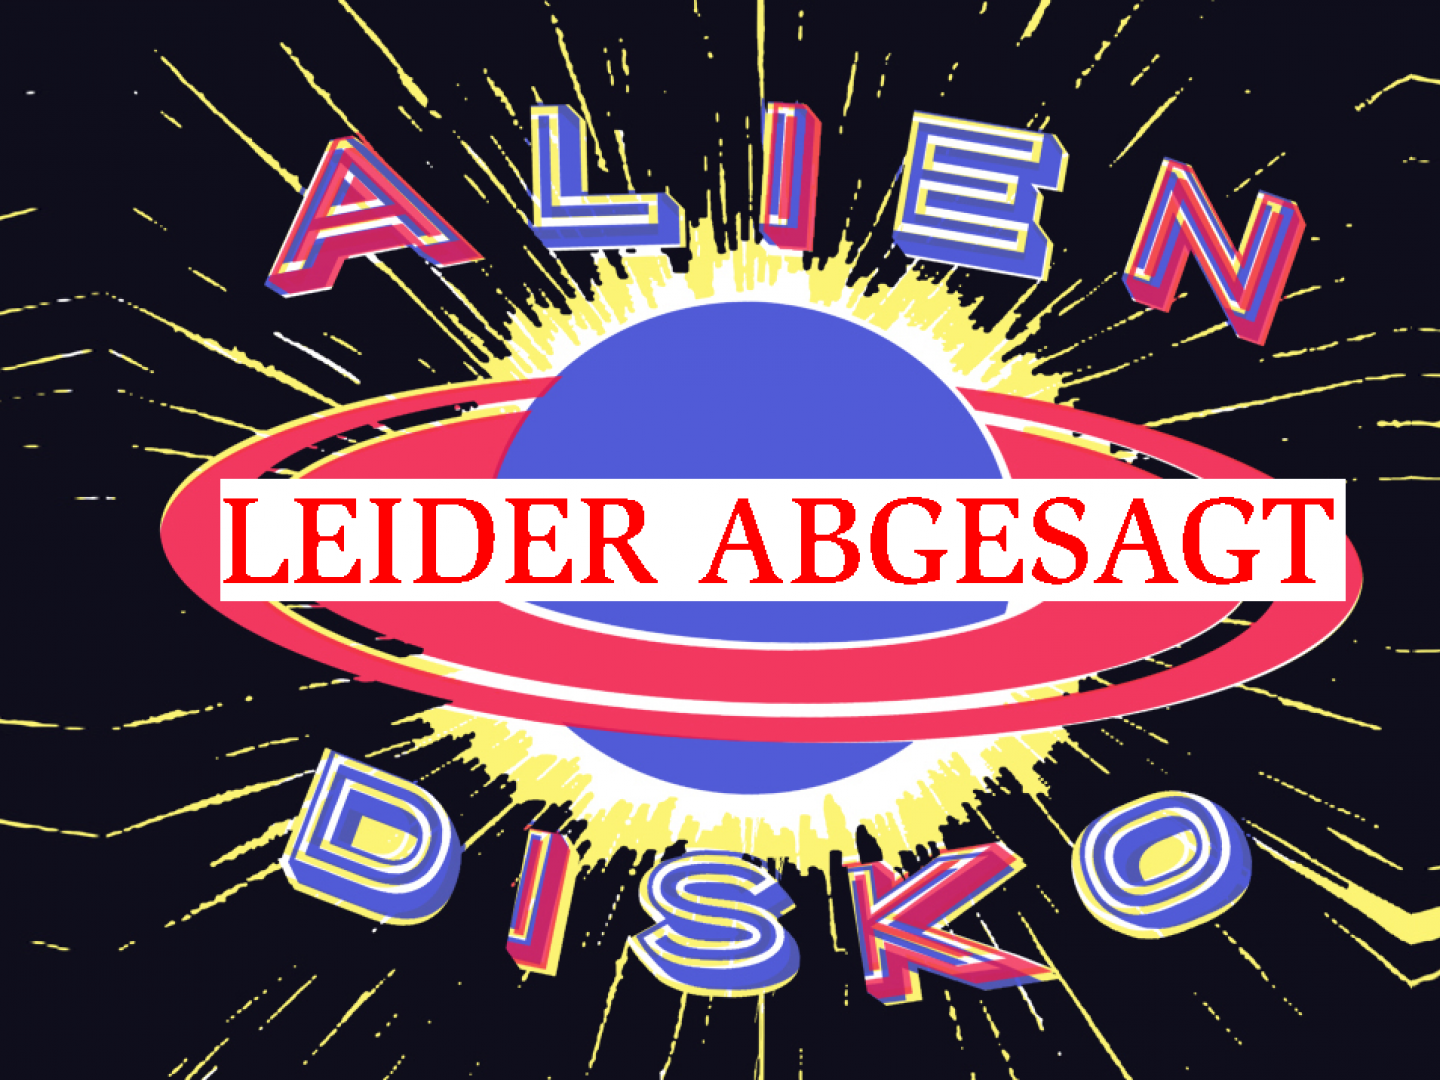 Plakat Alien Disko, auf dem steht "Leider abgesagt"